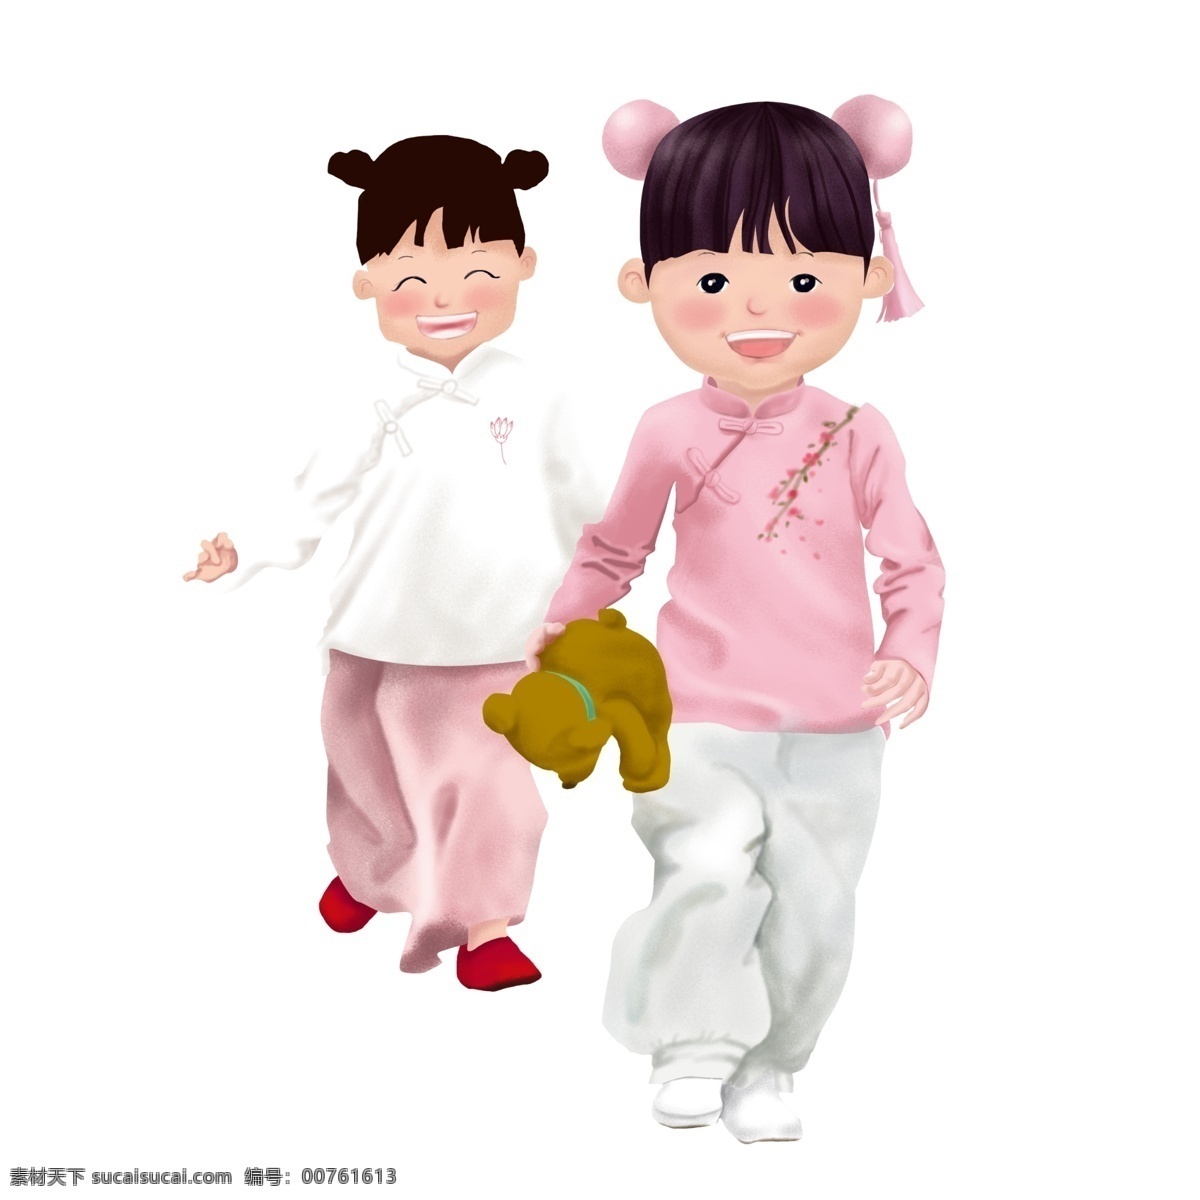 六一儿童节 穿 汉 服 女孩 六一国际儿童节 汉服 小孩 可爱 手绘 卡通 古装 奔跑 快乐 粉色 白色 流苏 中式 复古